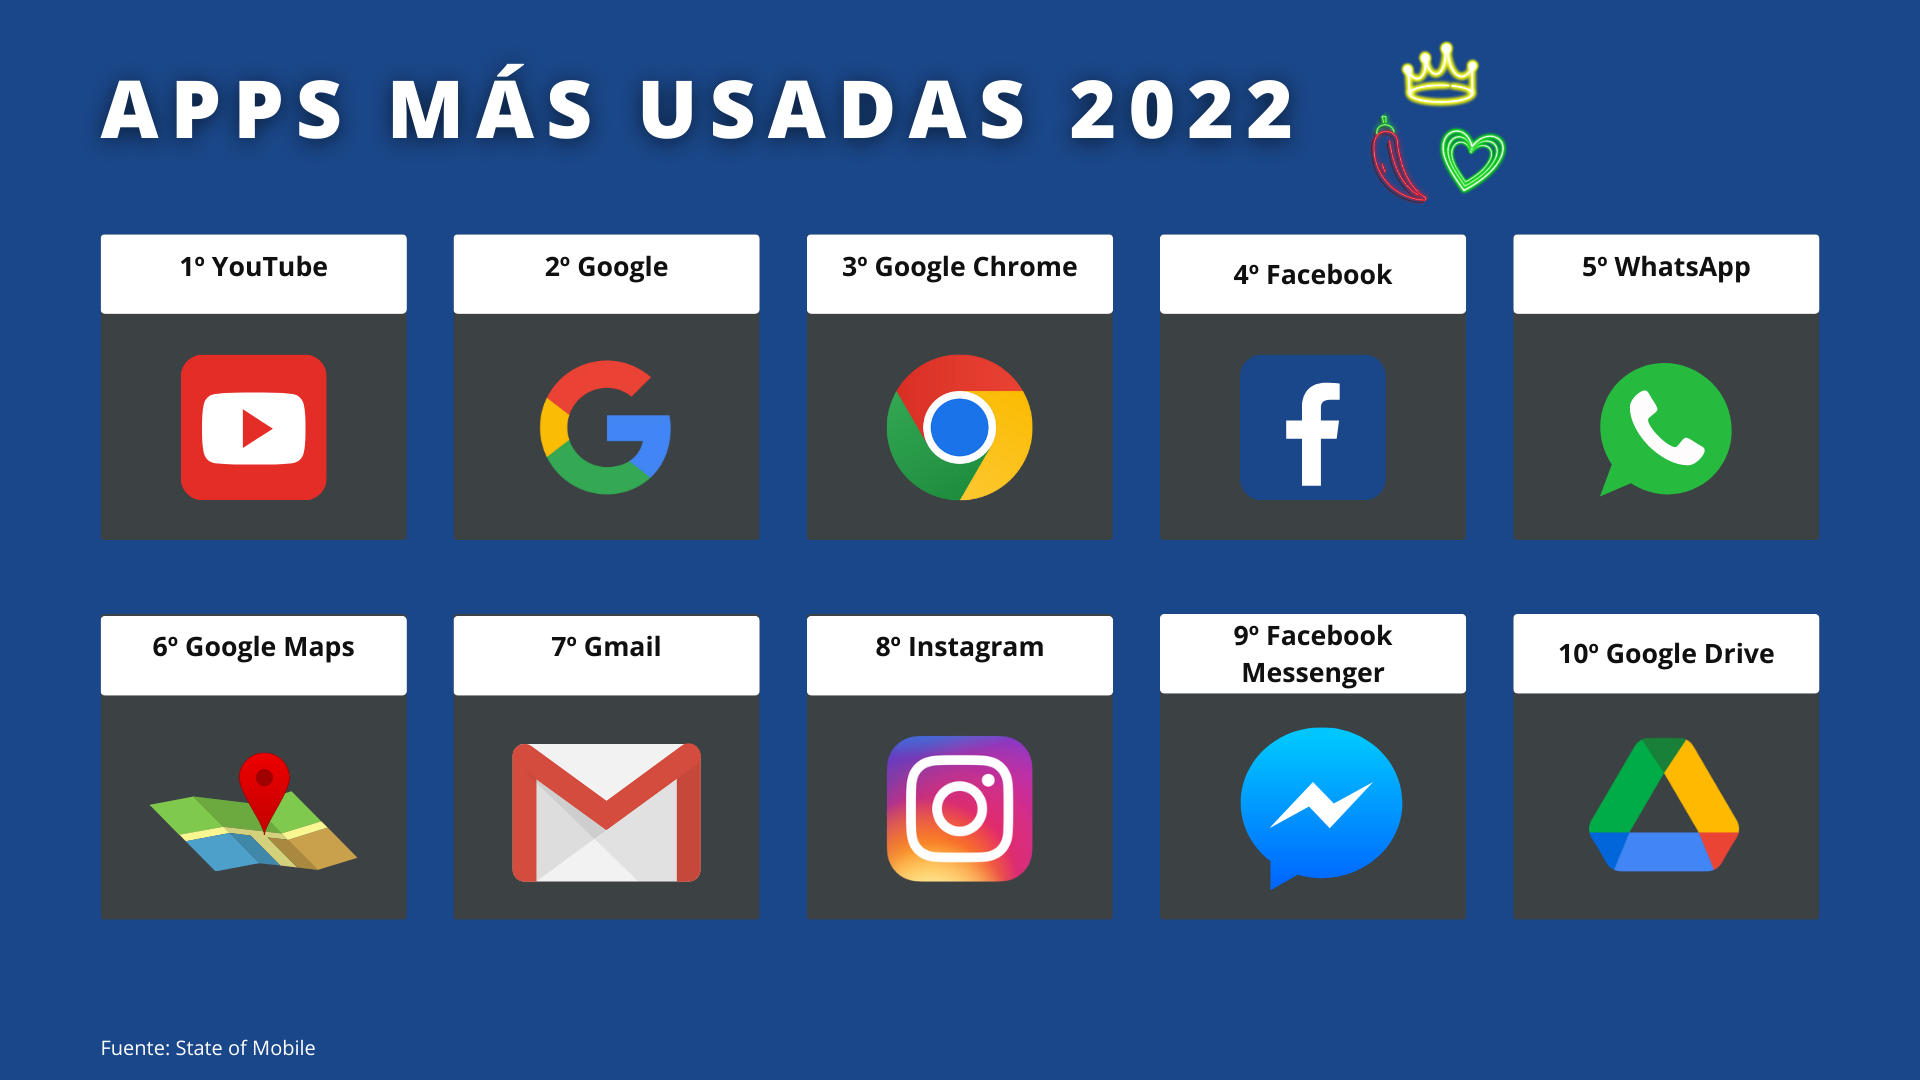 Aplicaciones que más se han usado en 2022: YouTube, Google, Google Chrome, Facebook, WhatsApp, Google Maps, Gmail, Instagram, Facebook Messenger y Google Drive.